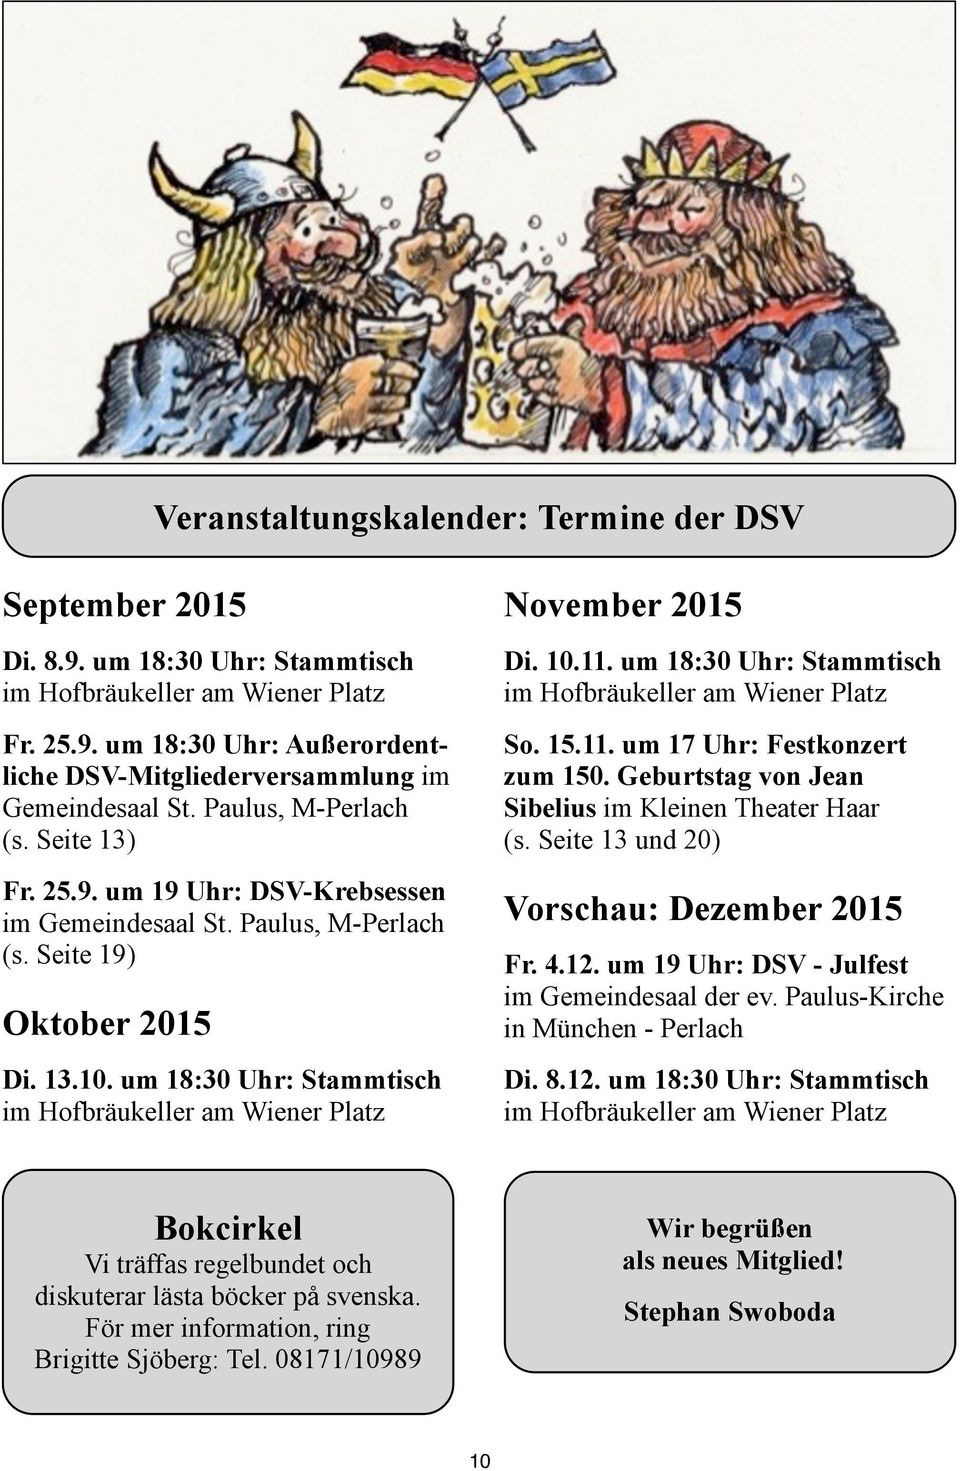 um 18:30 Uhr: Stammtisch im Hofbräukeller am Wiener Platz November 2015 Di. 10.11. um 18:30 Uhr: Stammtisch im Hofbräukeller am Wiener Platz So. 15.11. um 17 Uhr: Festkonzert zum 150.